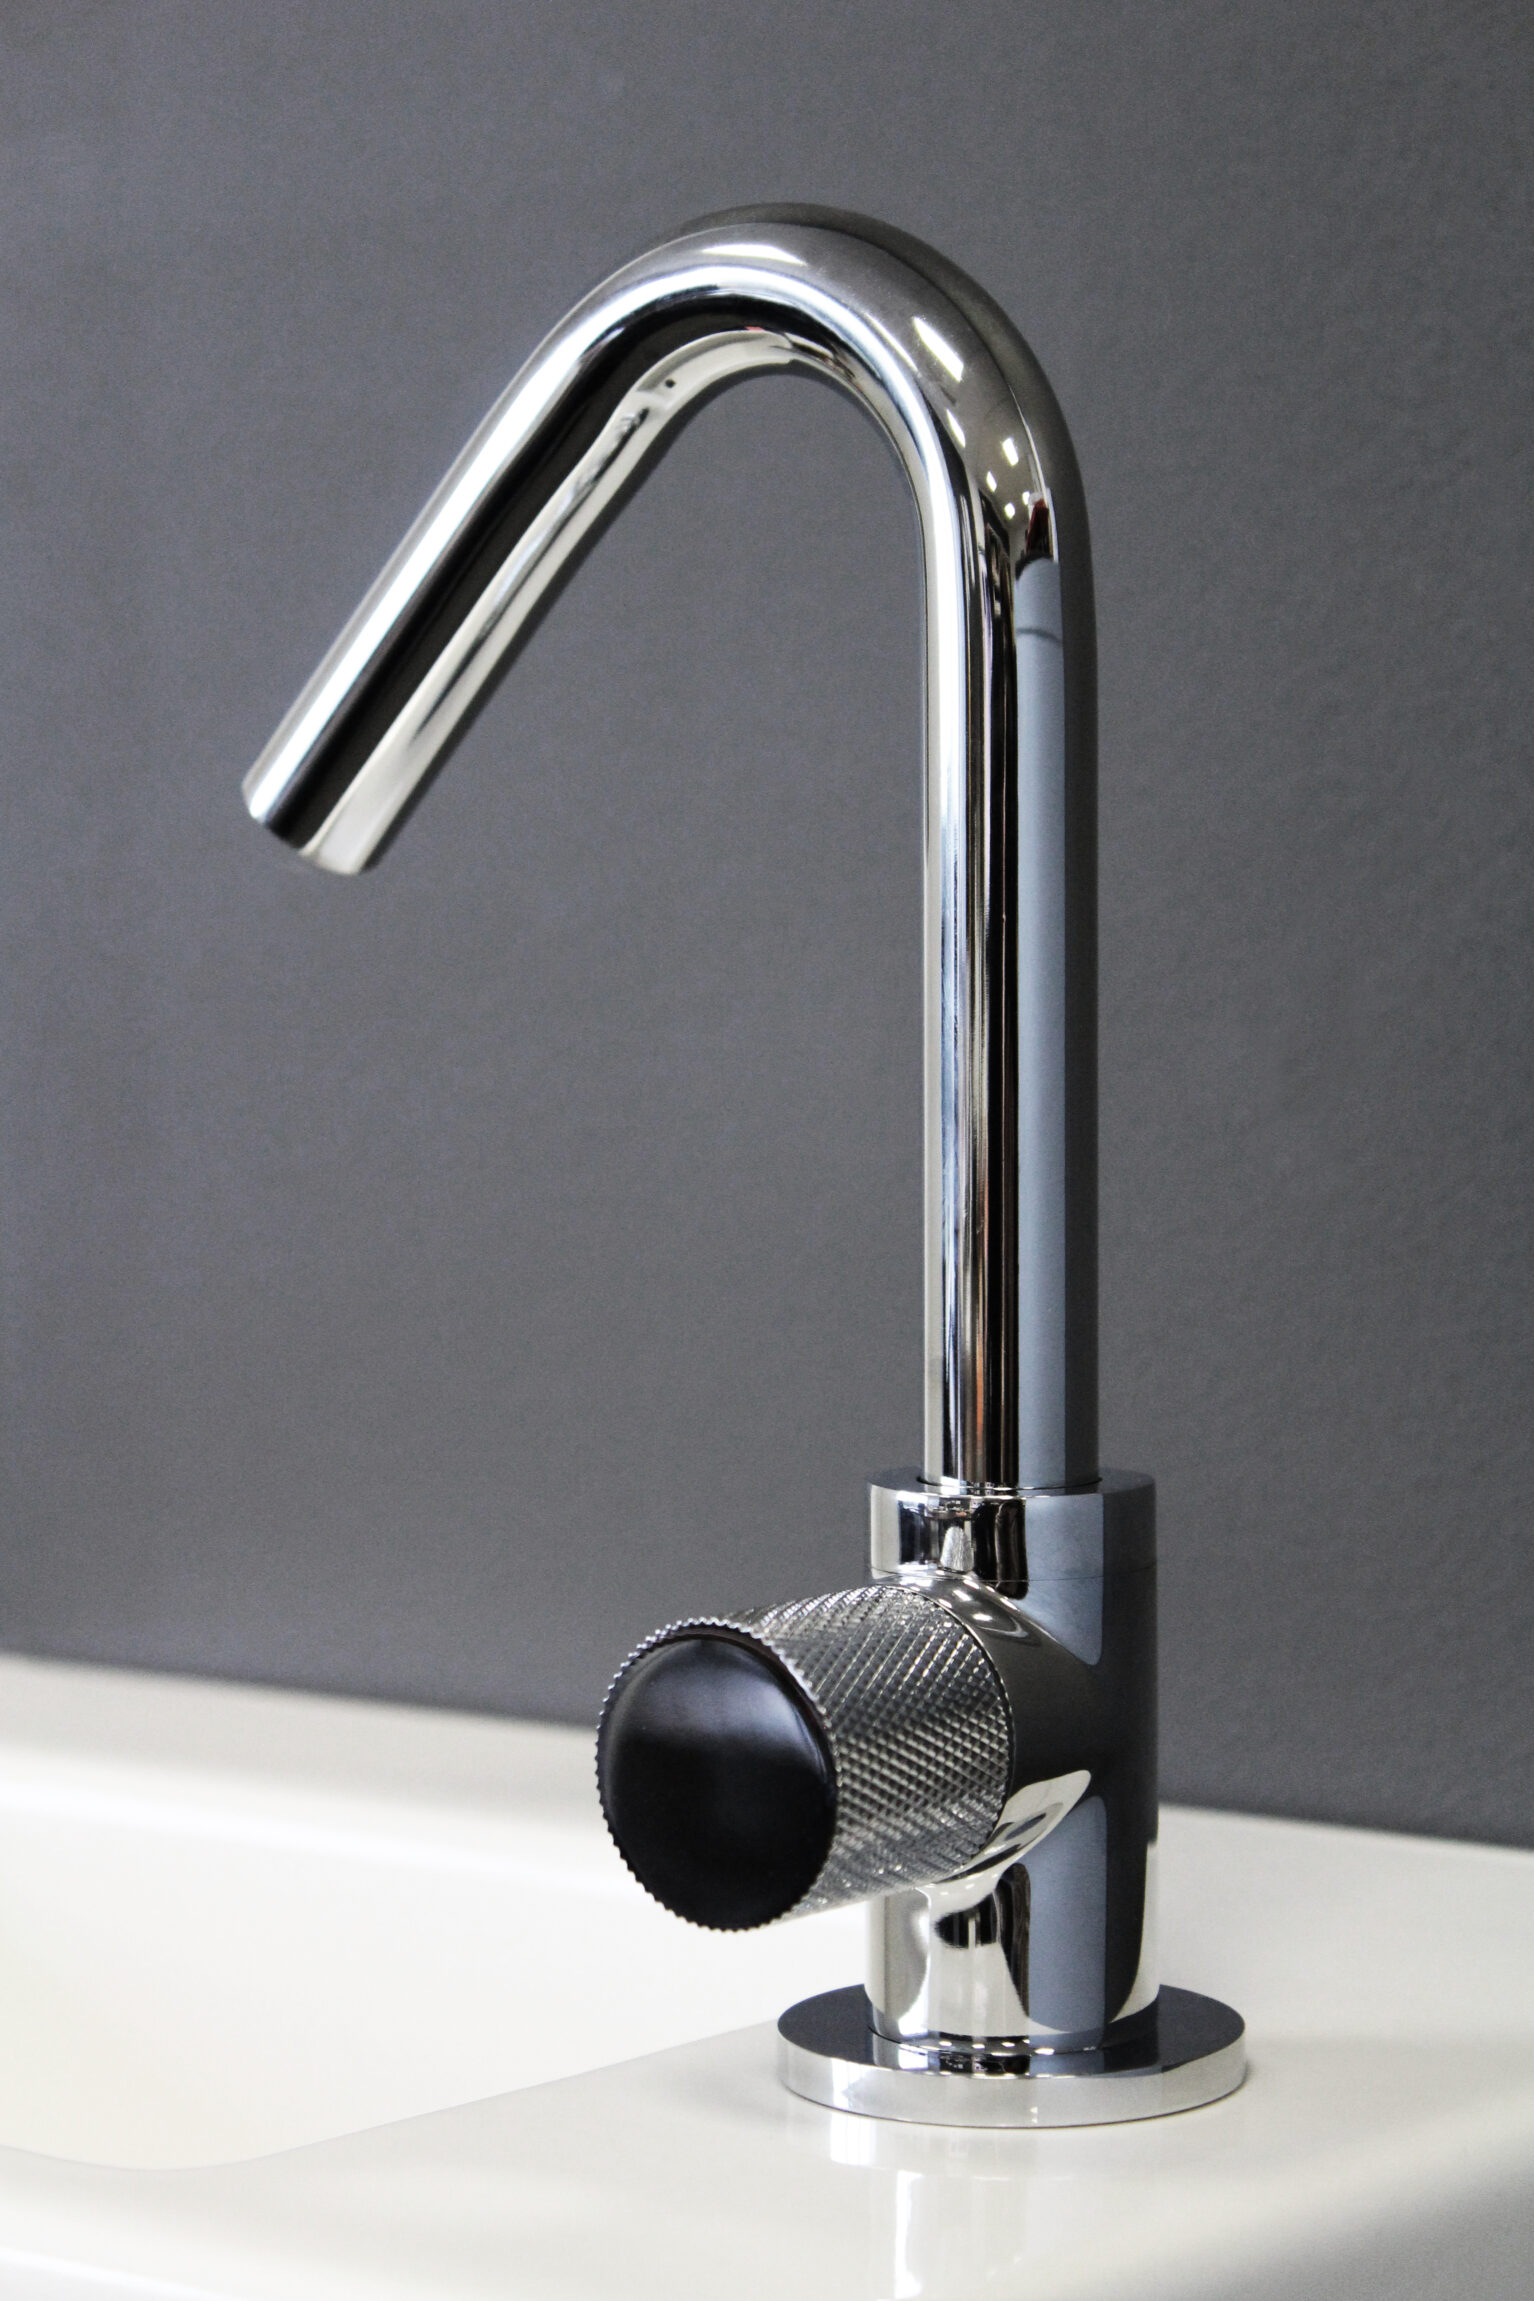 koud-water-kraan-fontein-glanzend-chroom-wit-kartel-handvat-met-draaibare-uitloop-toilet-badkamer-luxe-sanitair-InBe-Flush-clou-IB0603002